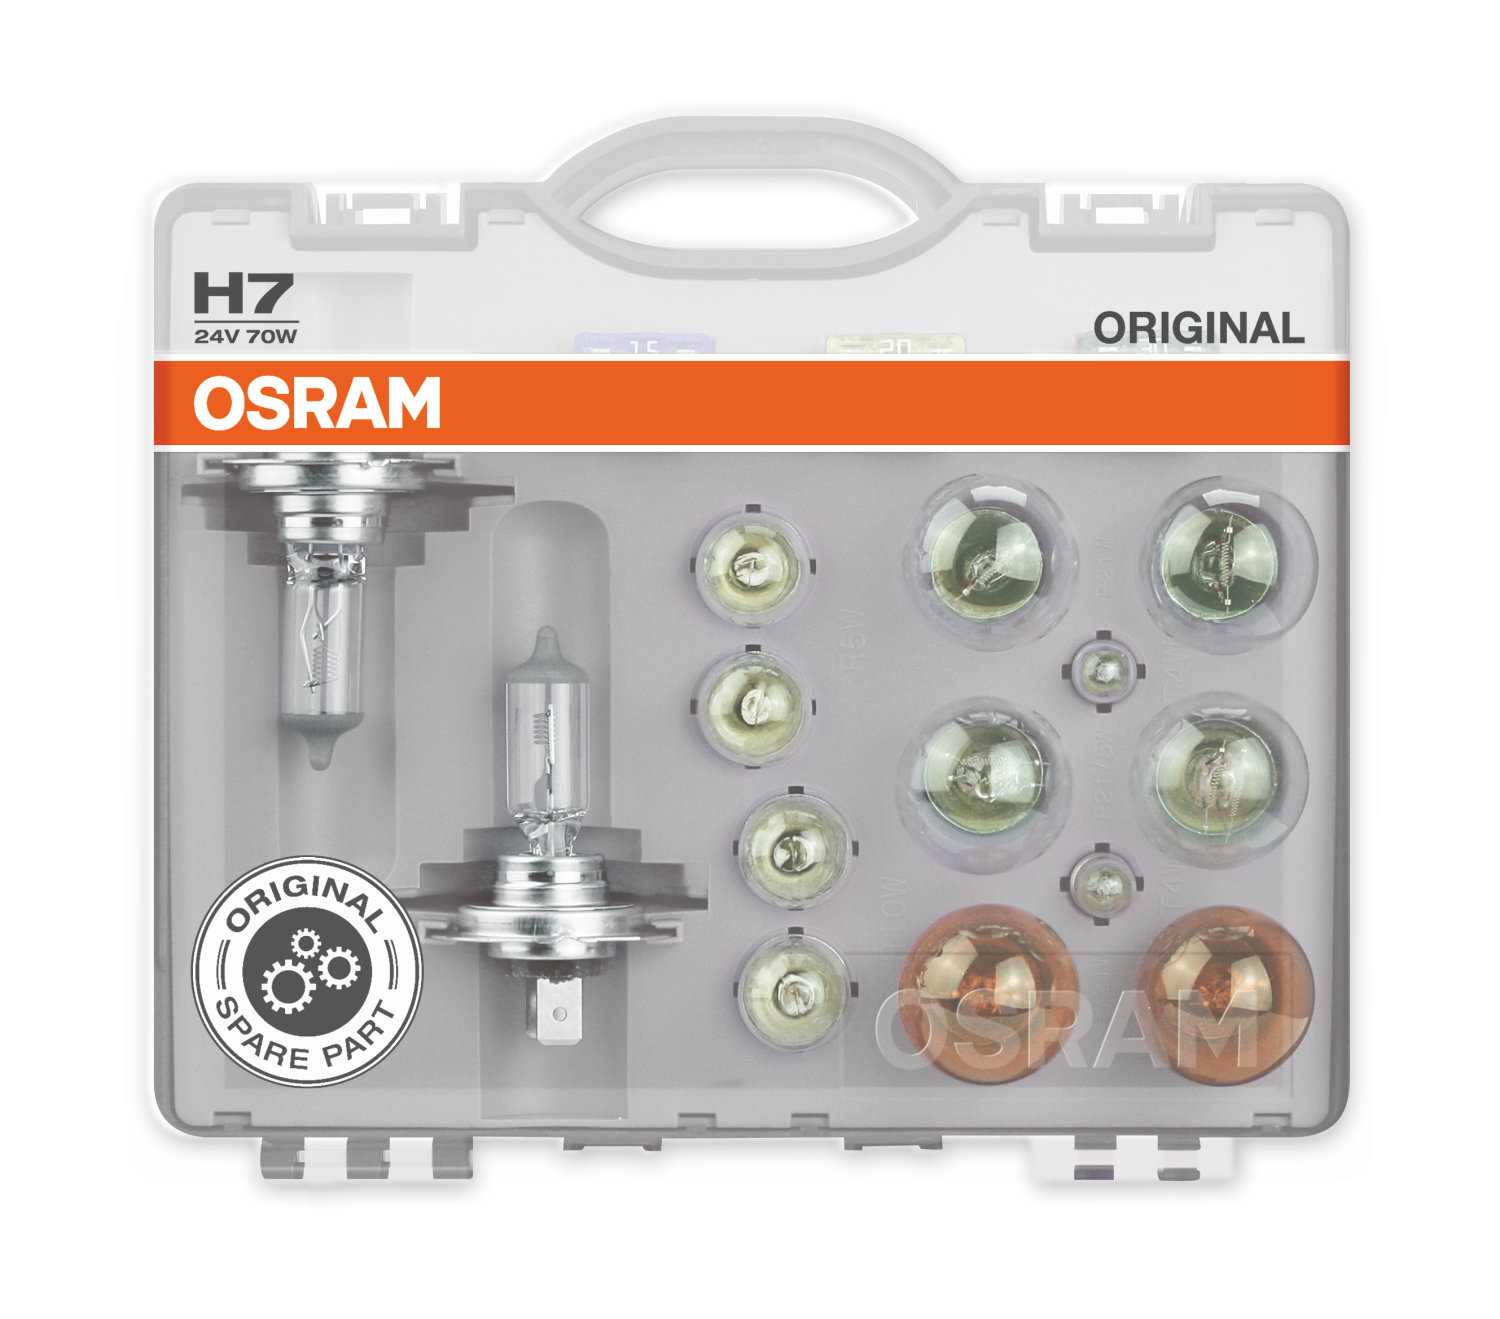 Osram H7 24V 70W Ersatzlampen-Box Original Spare Part für LKW - H7